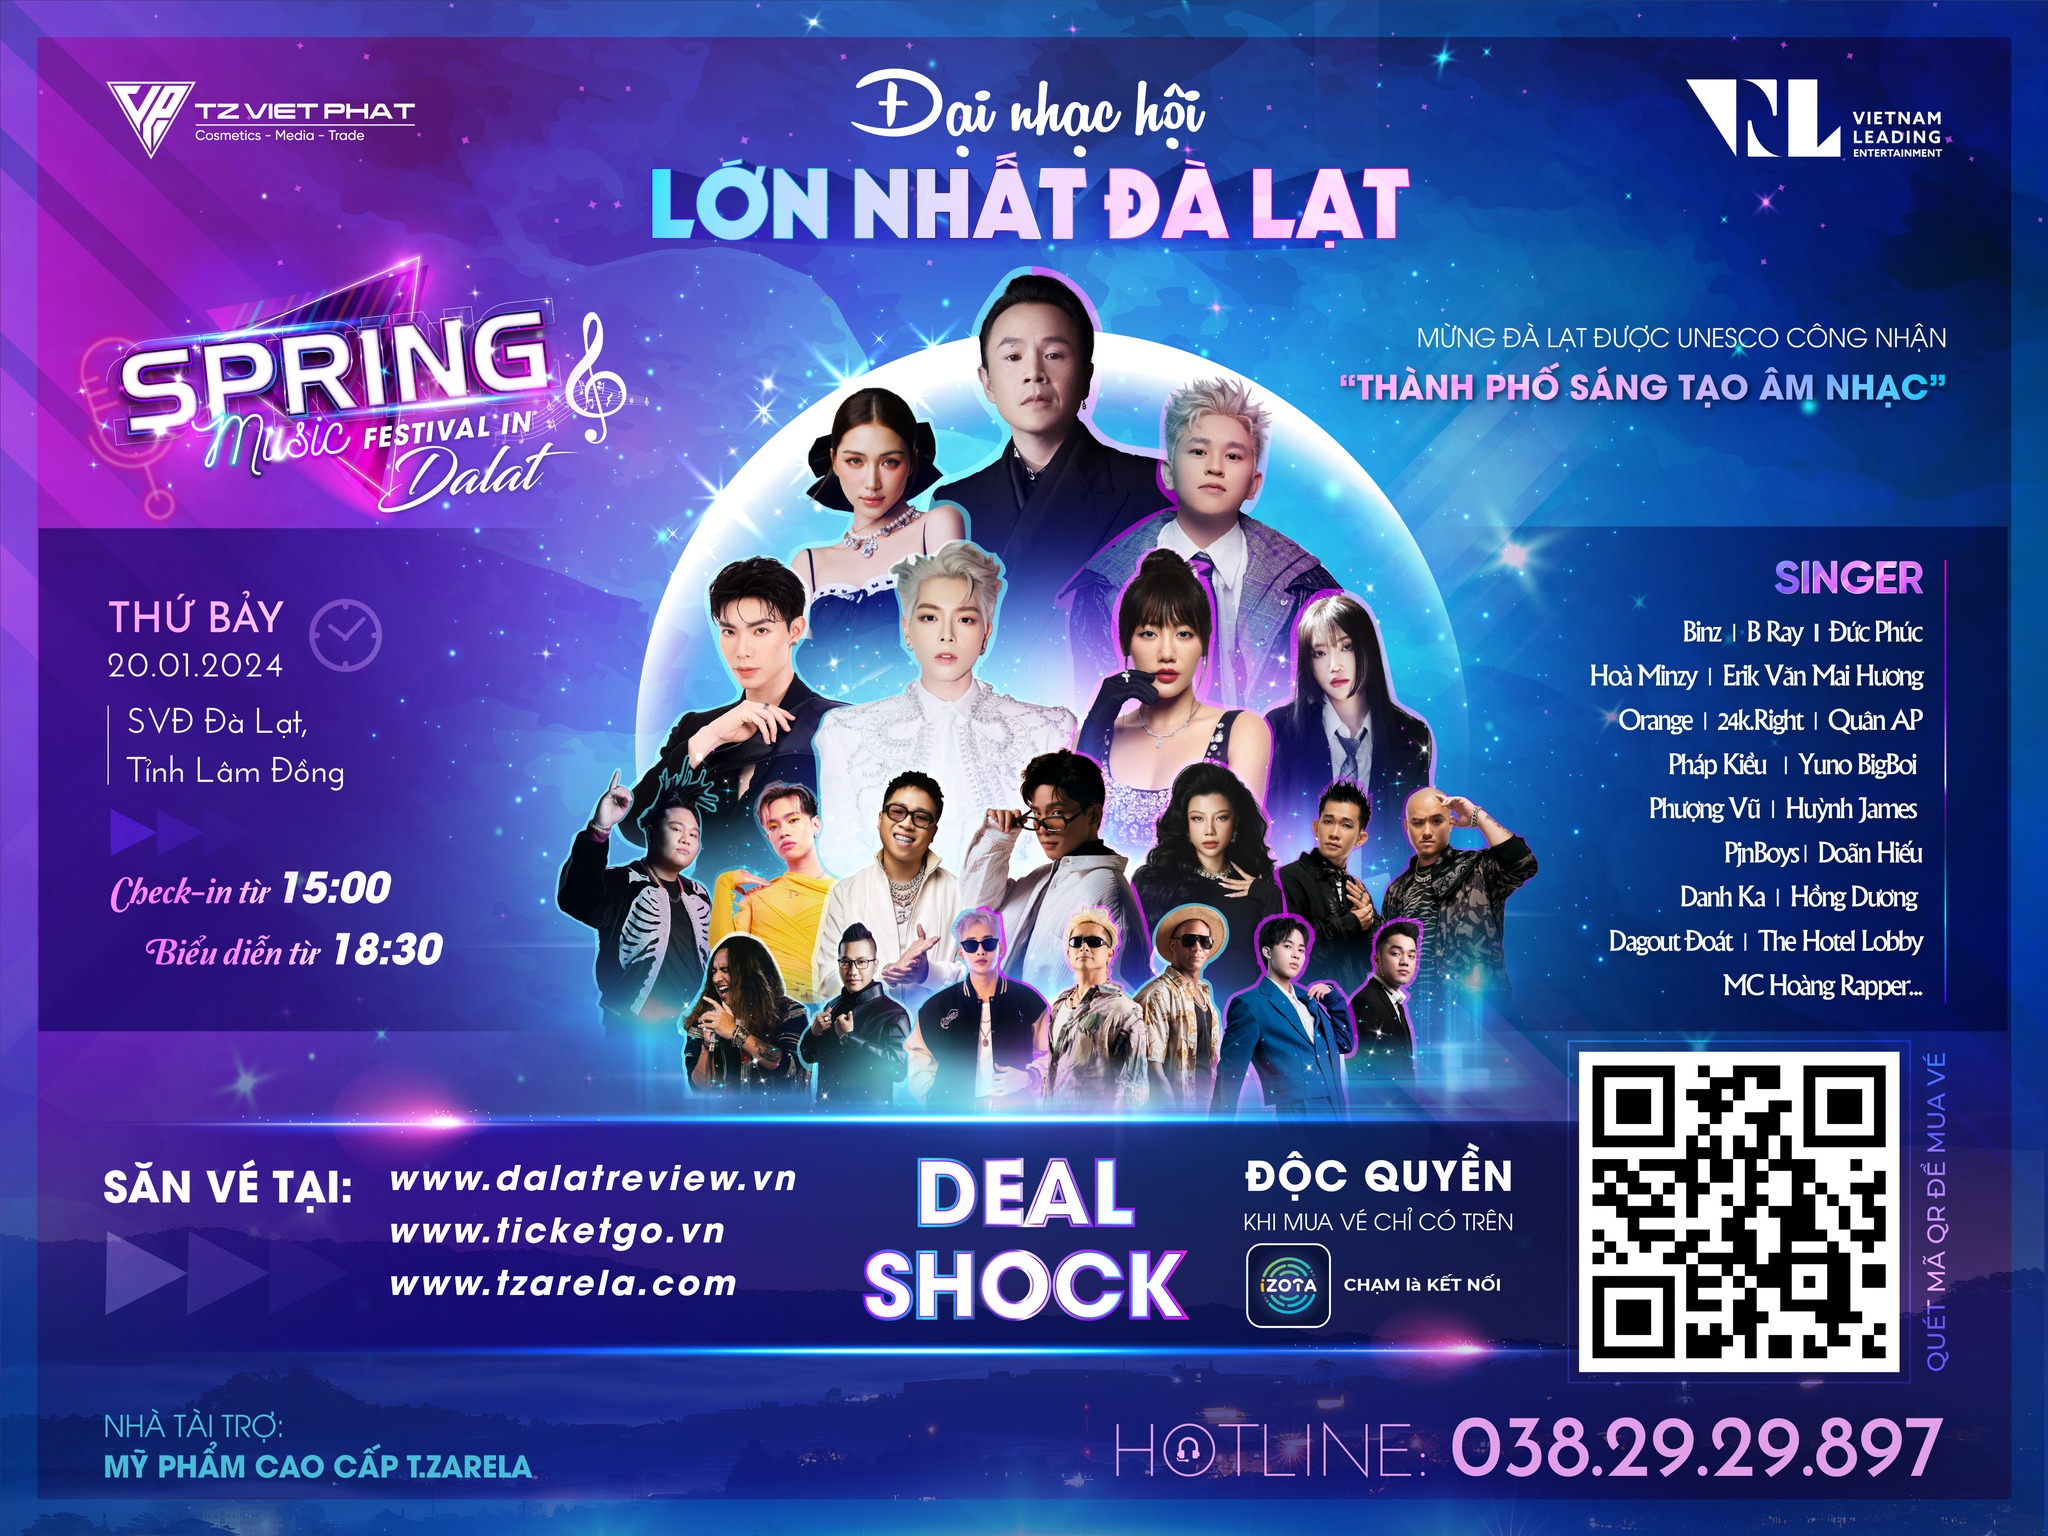 Spring Music Festival in DaLat 2024